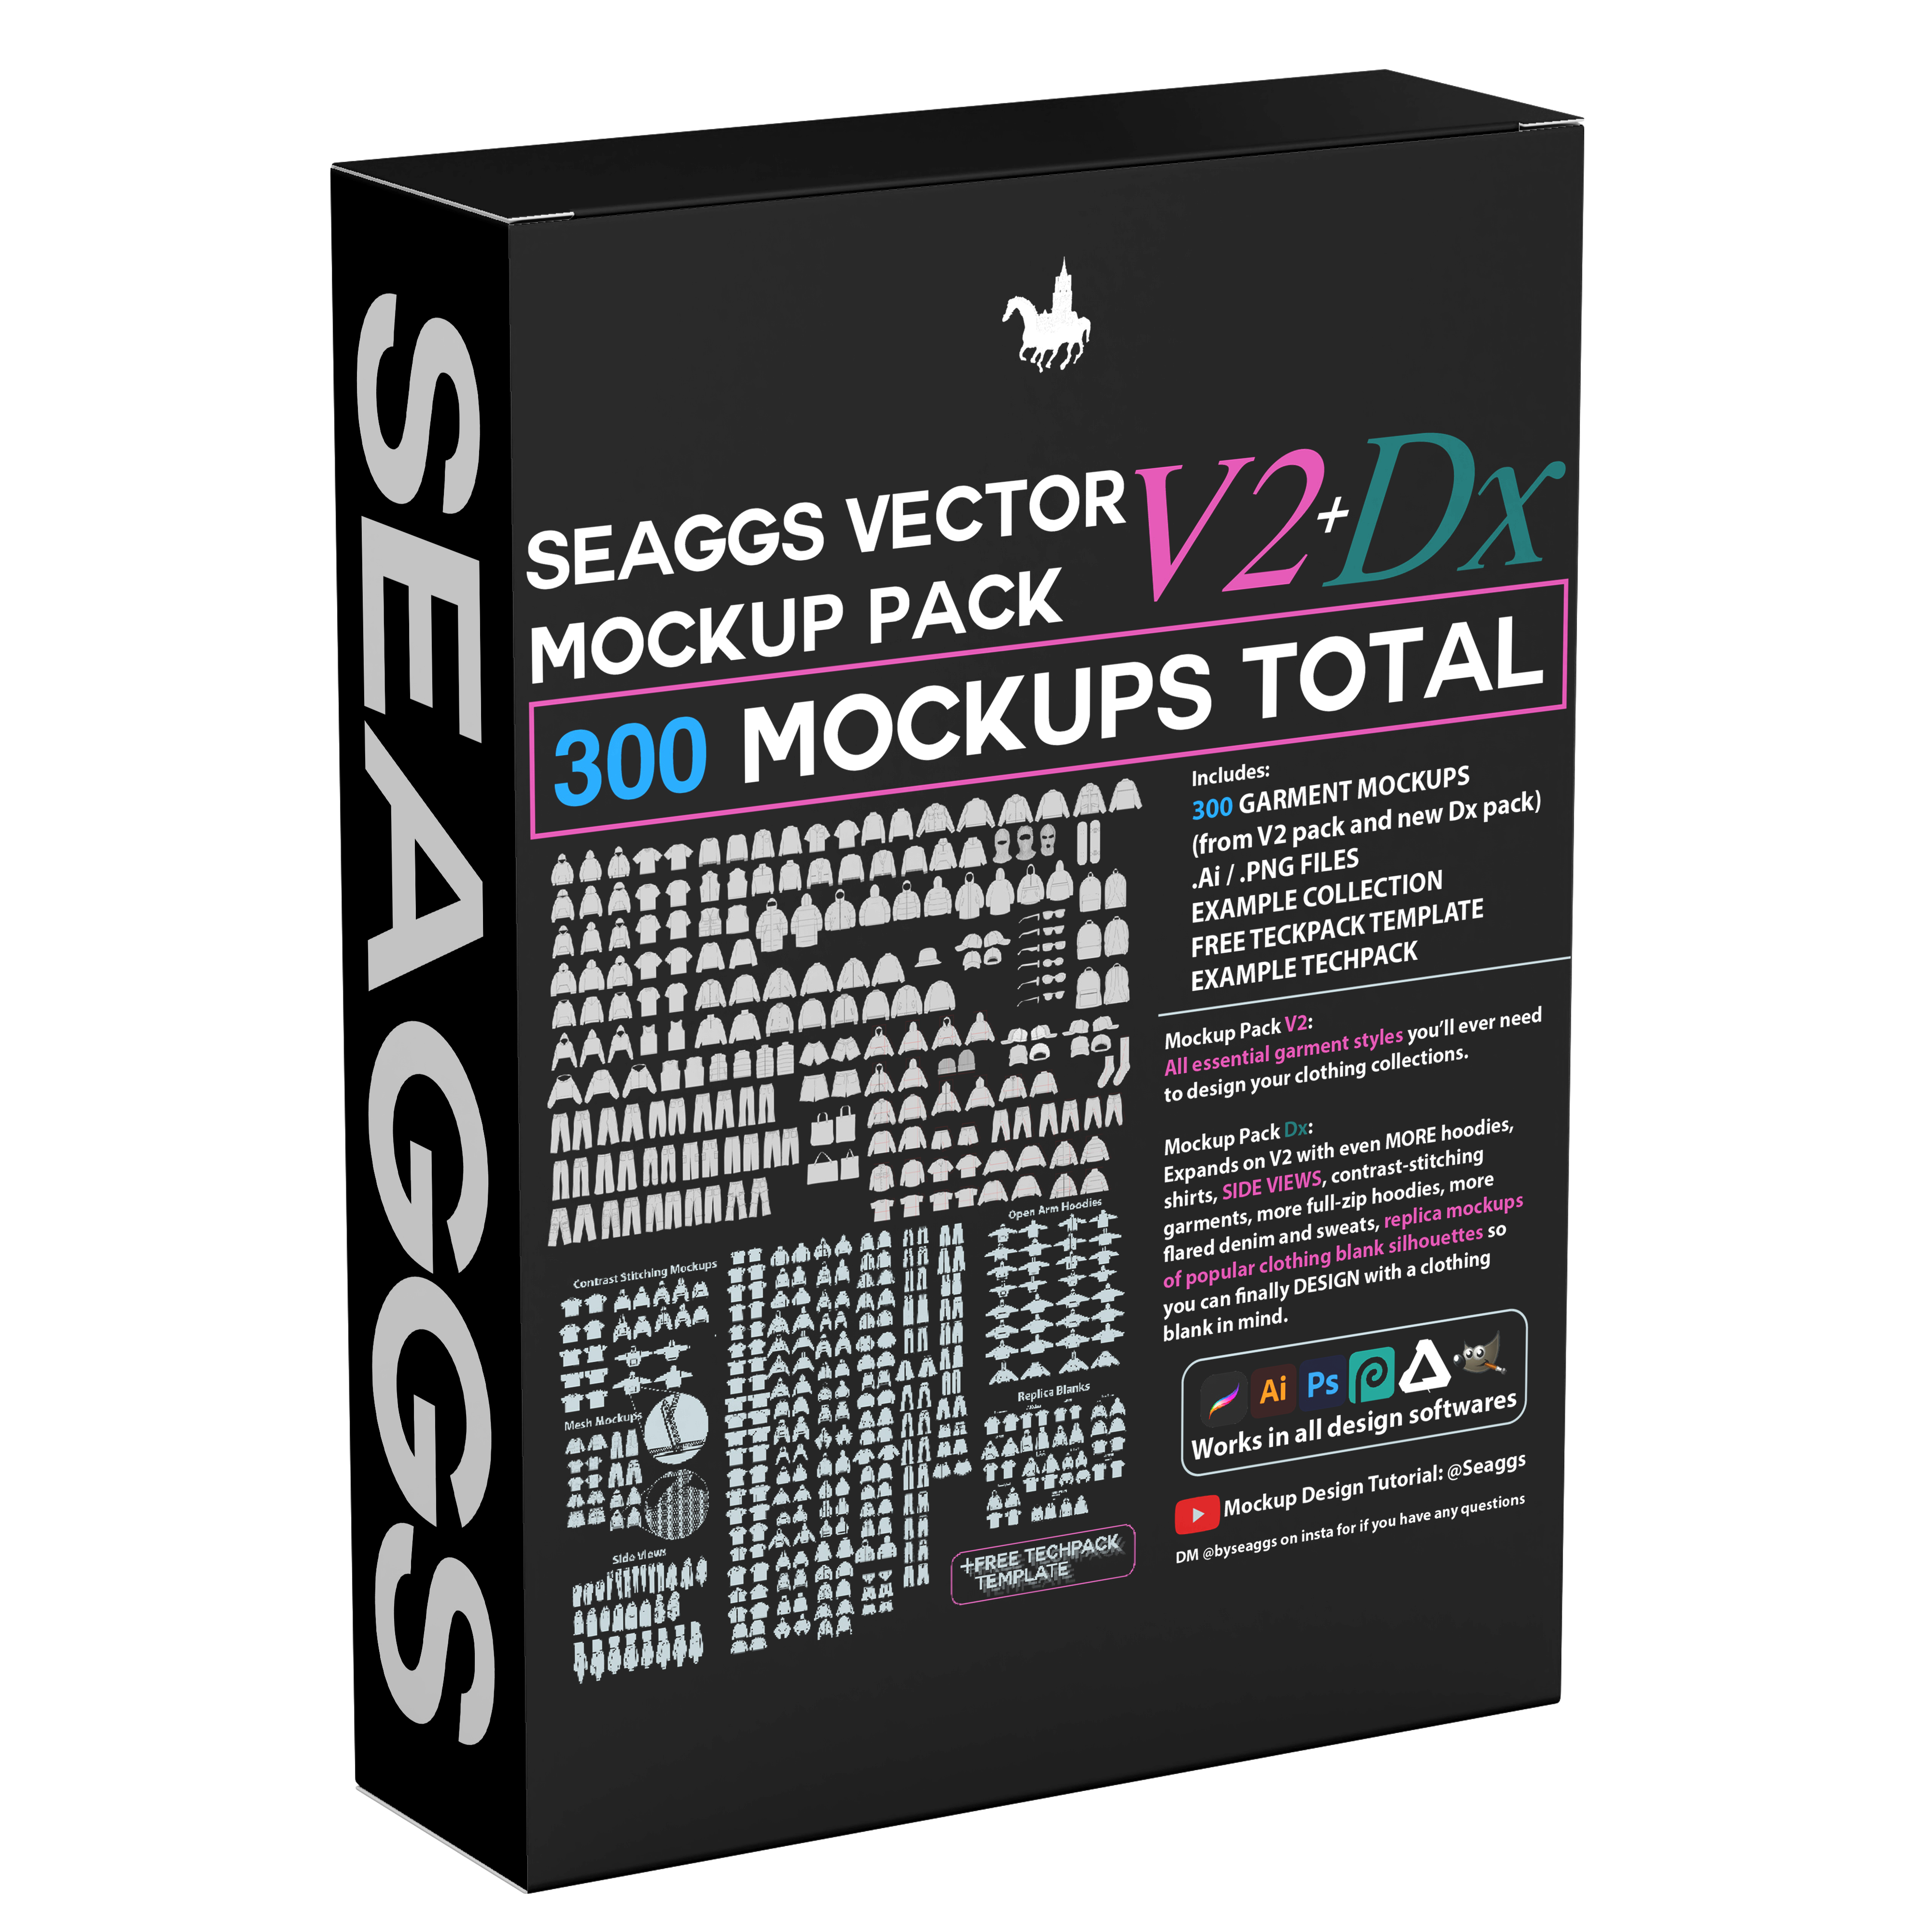 Seaggs Premium Vector Mockup Pack V2+Dx Bundle